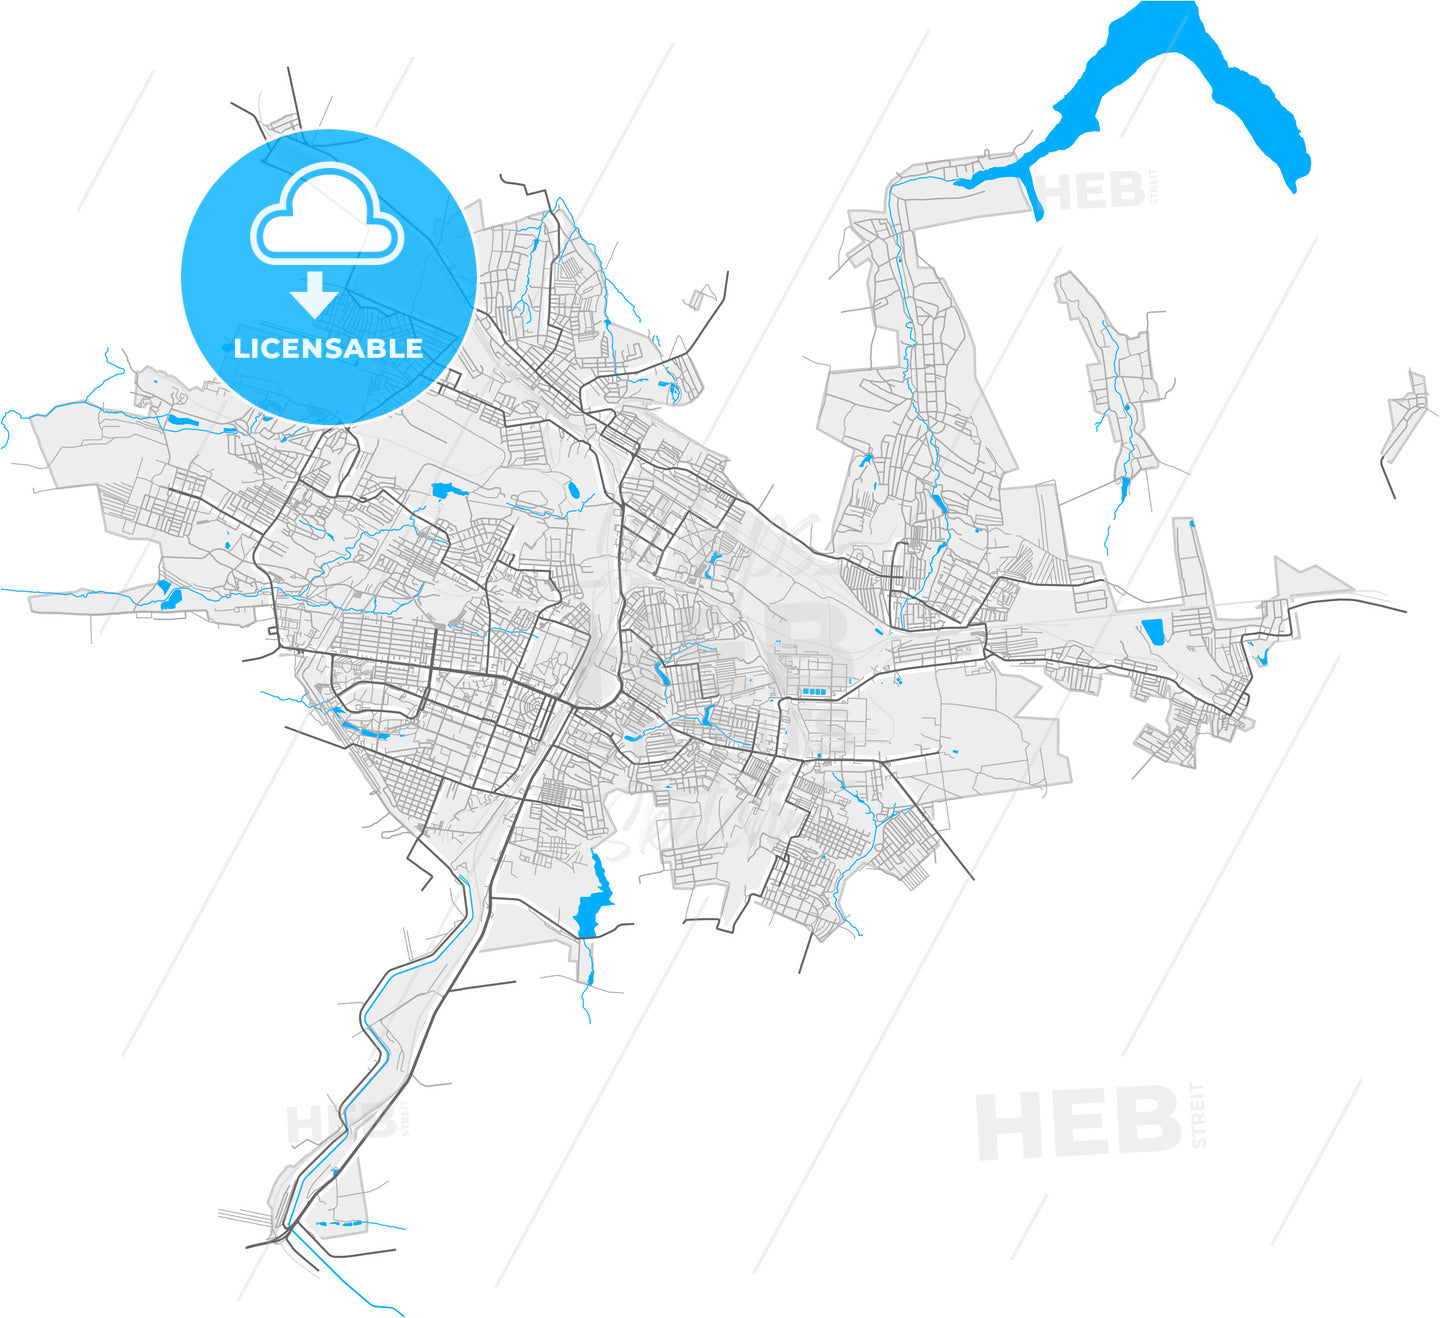 Horlivka, Donetsk Oblast, Ukraine, high quality vector map